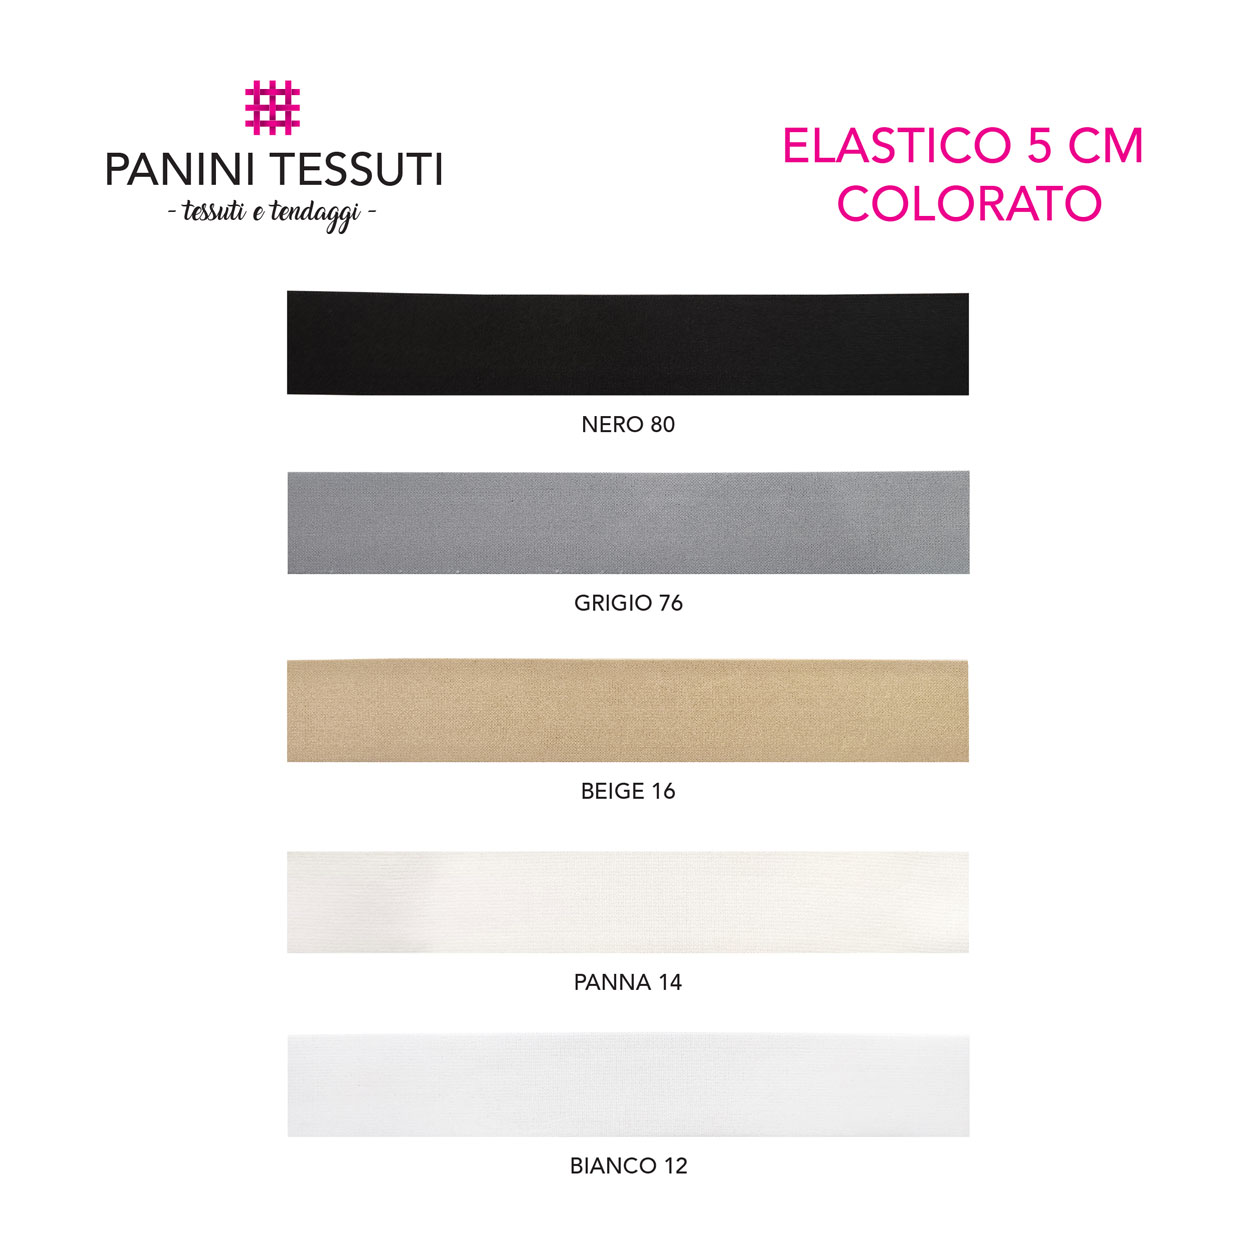 elastico-5-cm-colorato